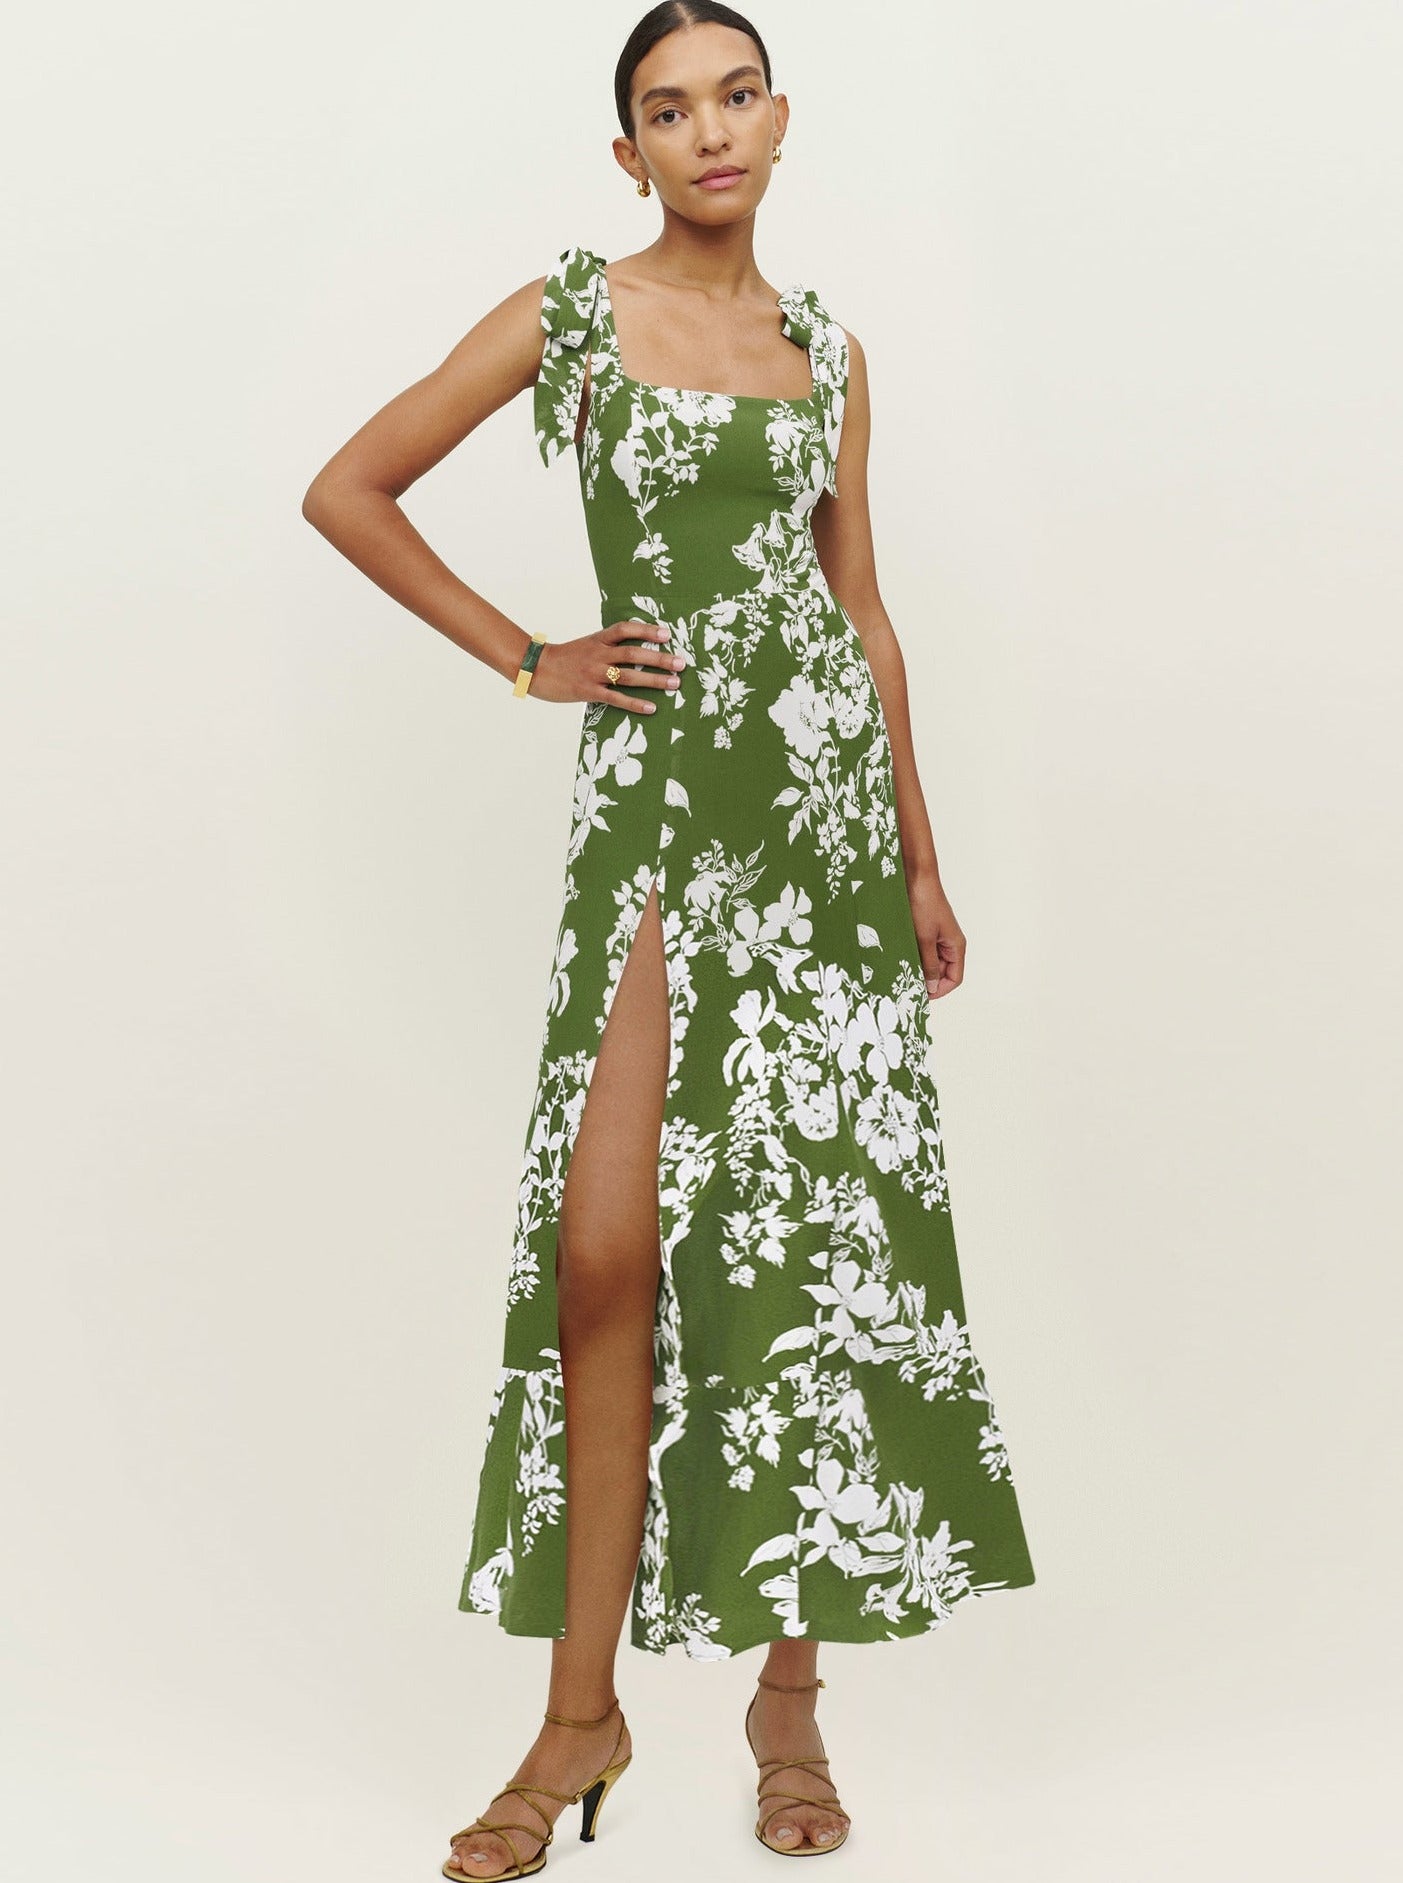 Grünes Kleid mit Blumenmuster, Strumpfhaltern, eckigem Ausschnitt und Schlitz 